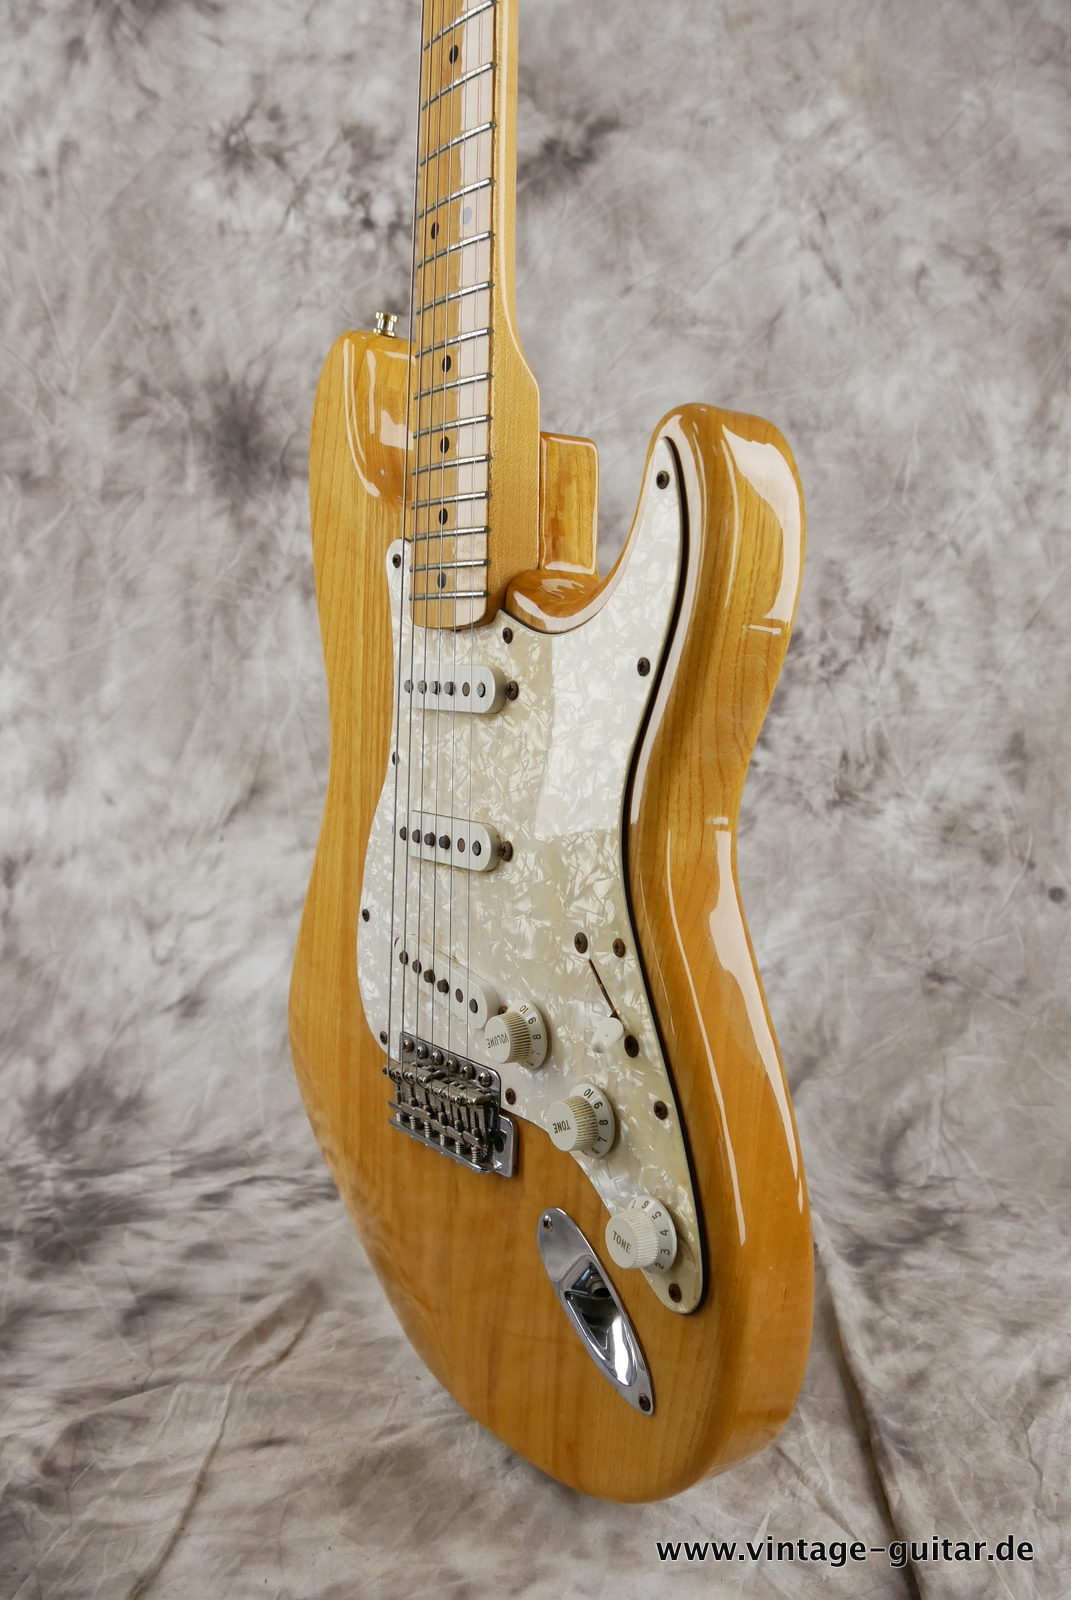 img/vintage/5322/Fender_Stratocaster_70s_reissue_maple_neck_1999_Mexico-006.JPG